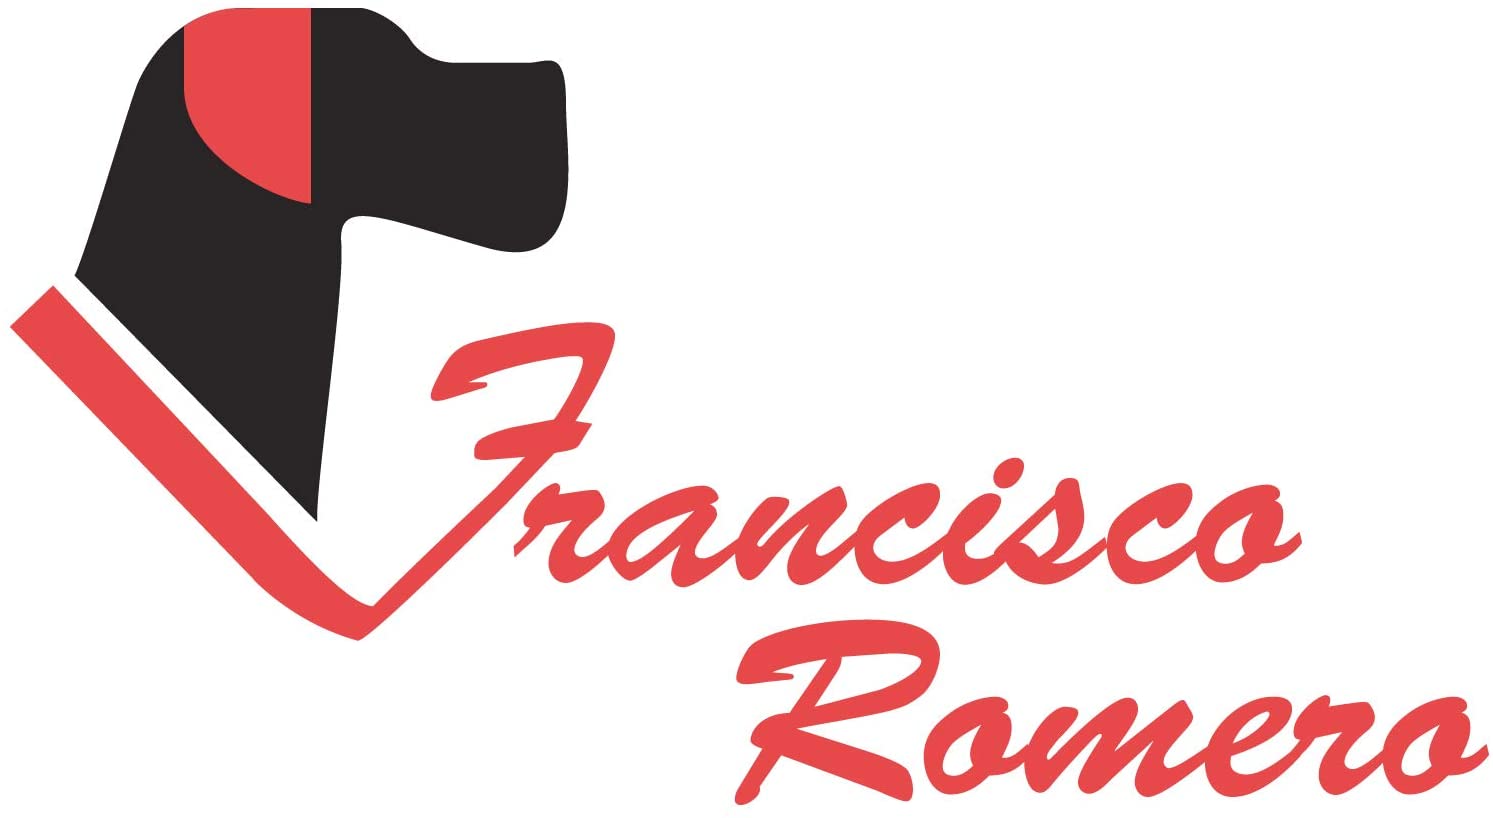  Francisco Romero - Collar con Funda Antiparasitaria Biothane Beta, 2.5 x 50 cm, Rojo 